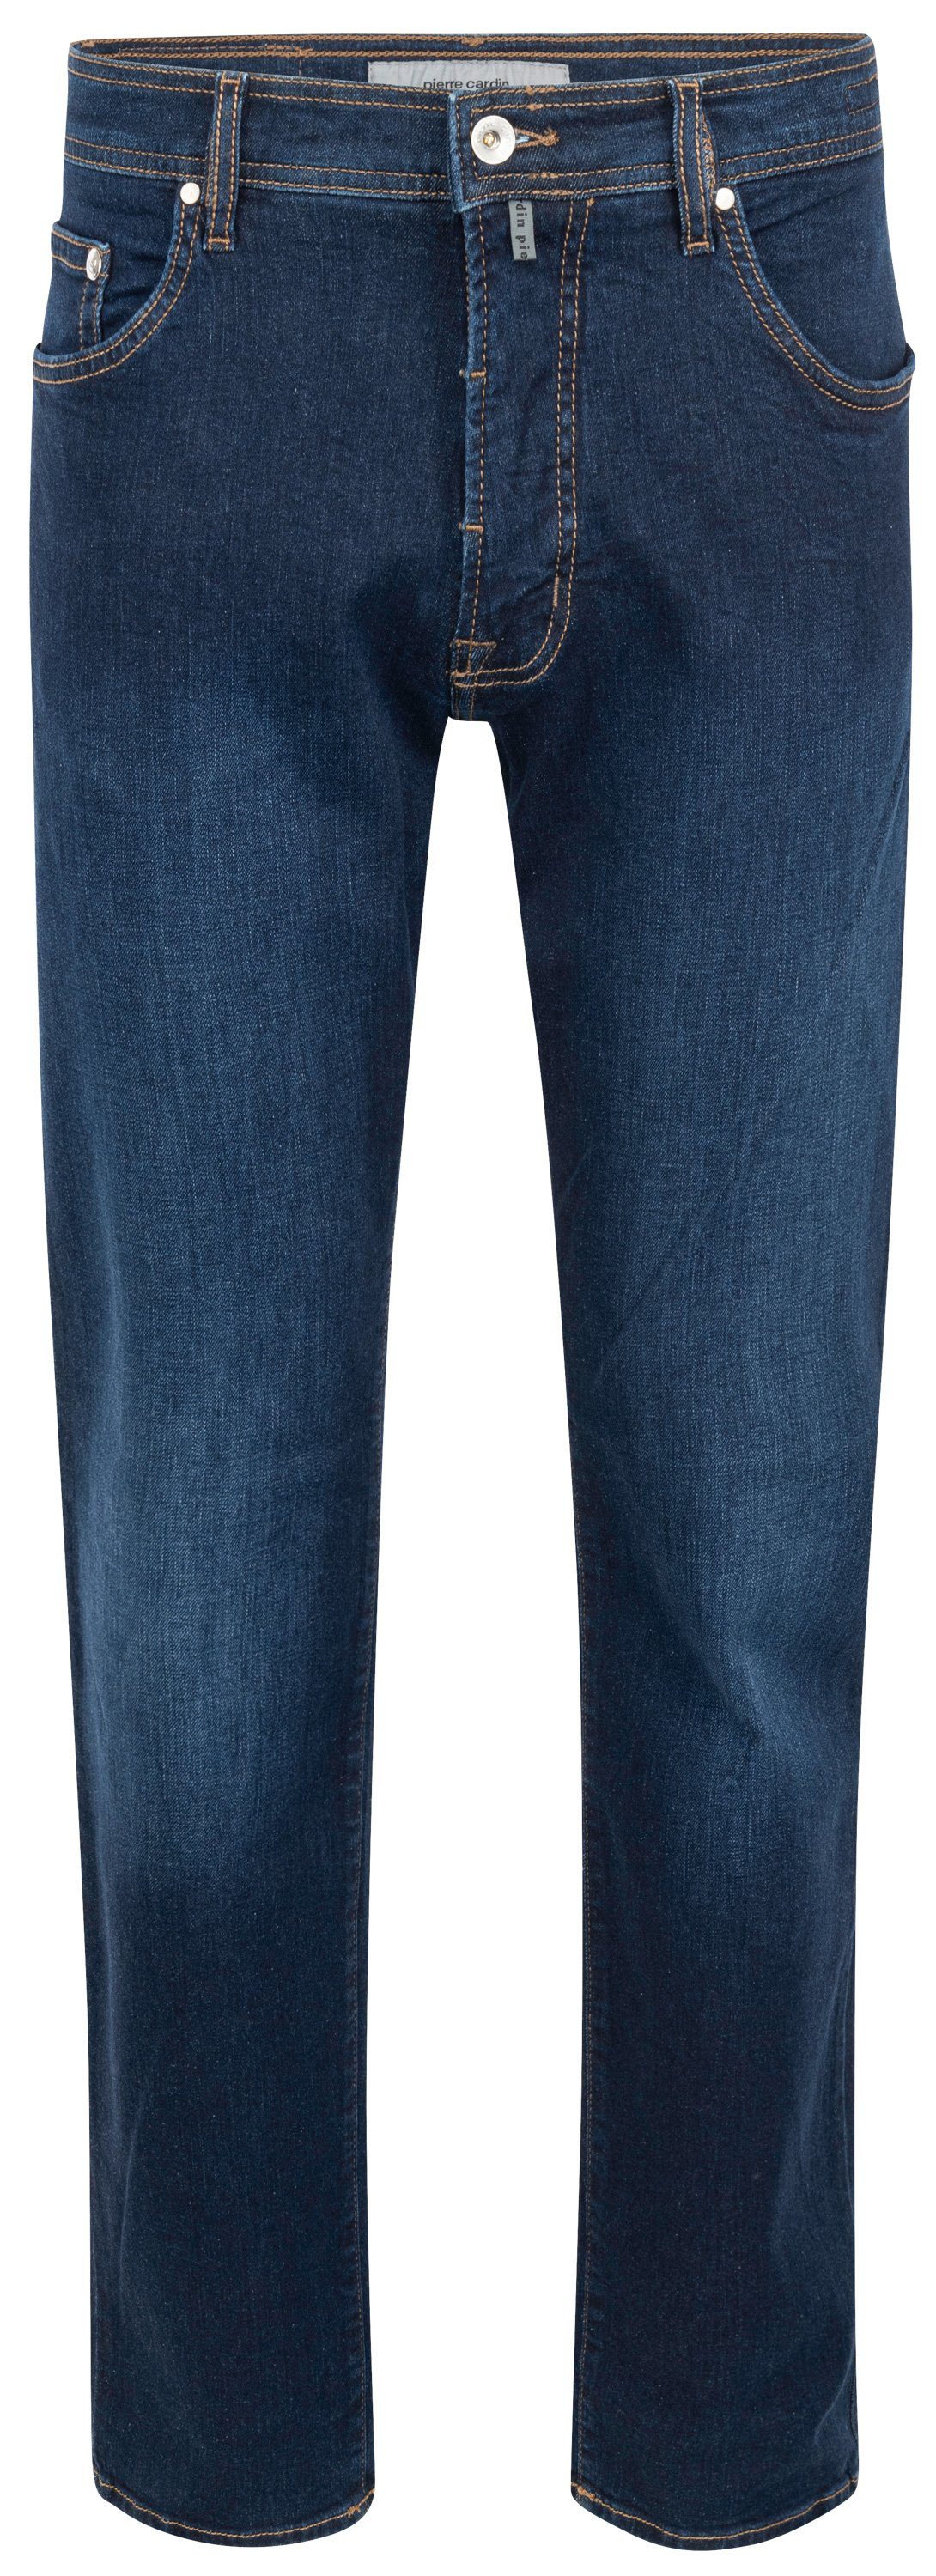 5-Pocket-Jeans CARDIN PIERRE blue buffies DEAUVILLE dark used 31960 Cardin 7106.6814 Pierre